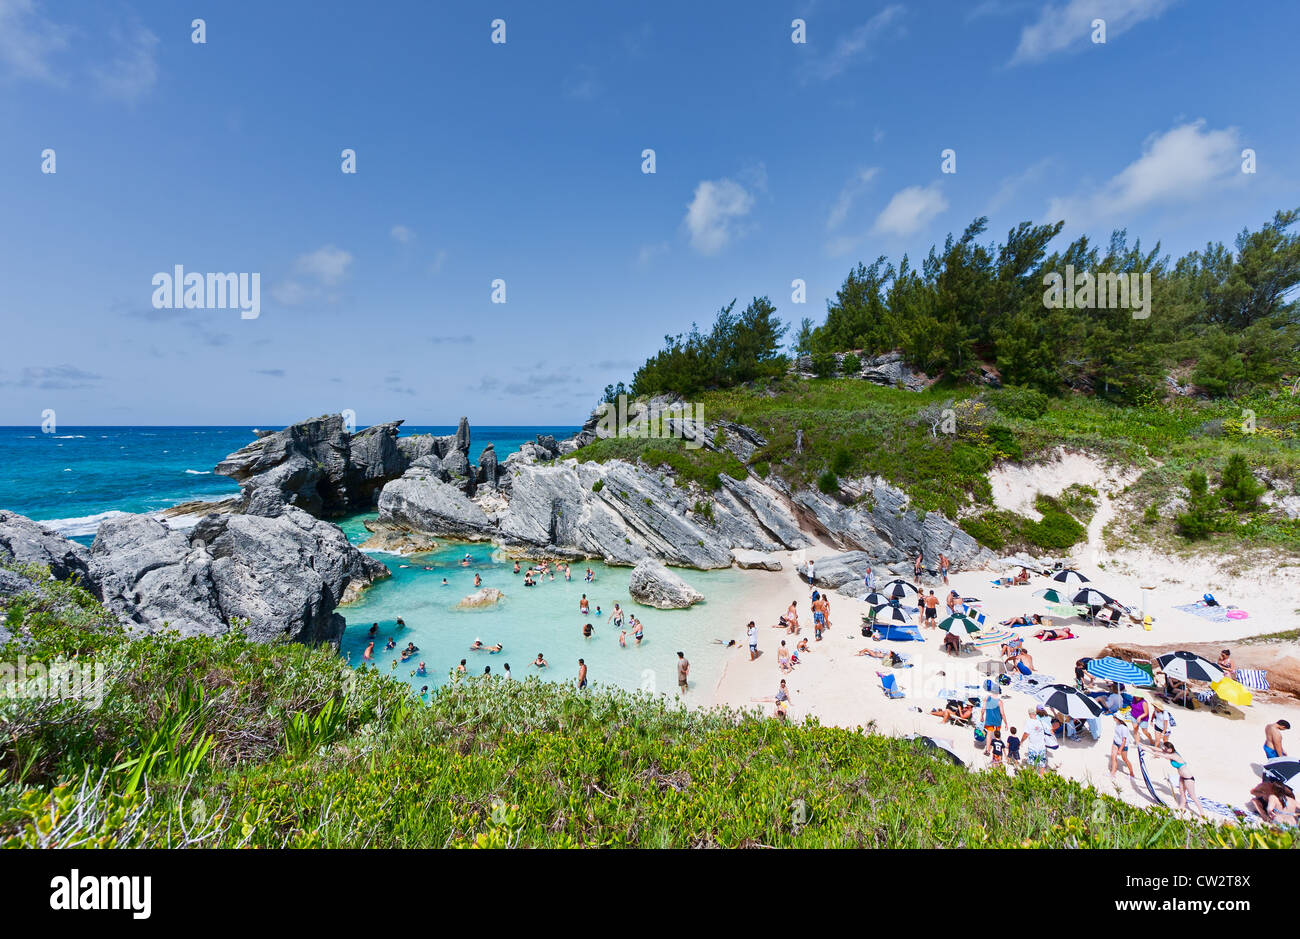 Eine Sommerszene am Horseshoe Bay, Bermuda. Es gibt Sonnenanbeter am Strand und Schwimmer im Wasser. Stockfoto